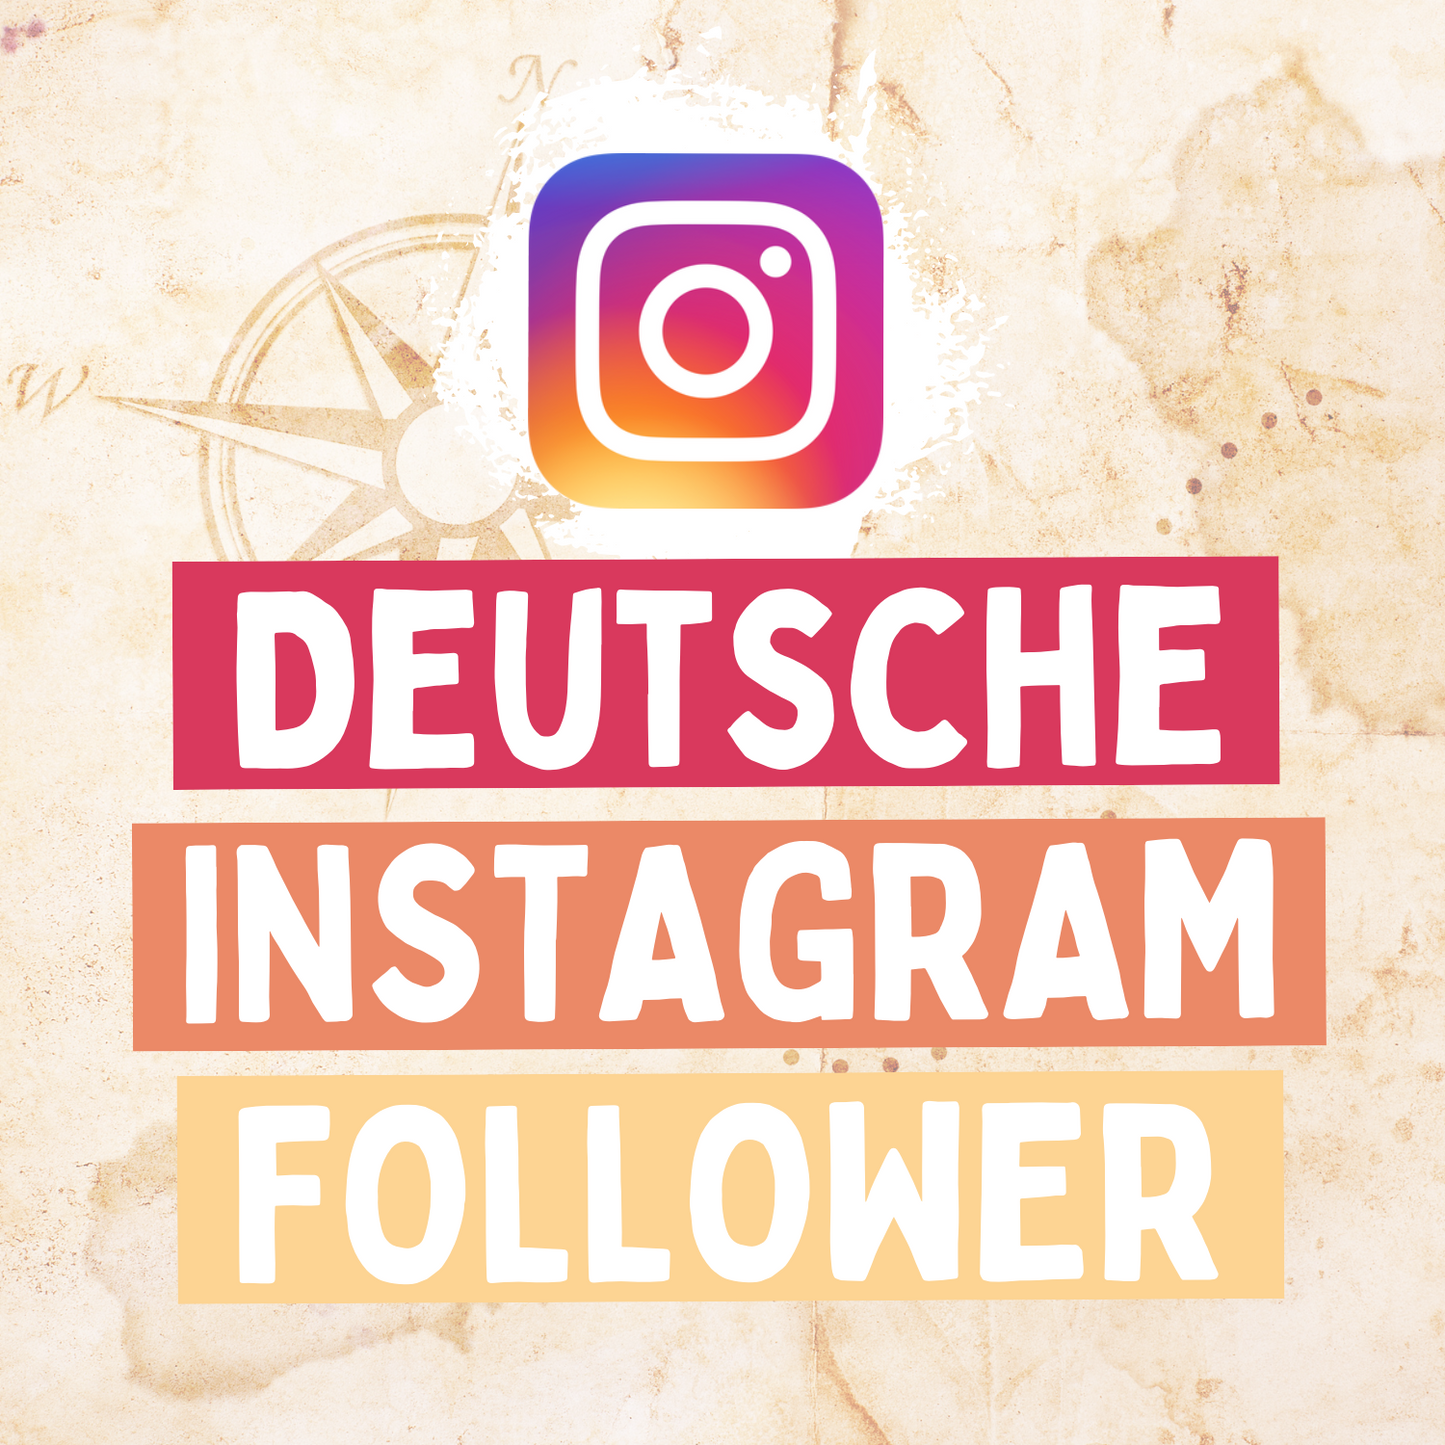 Echte deutschsprachige Instagram Follower